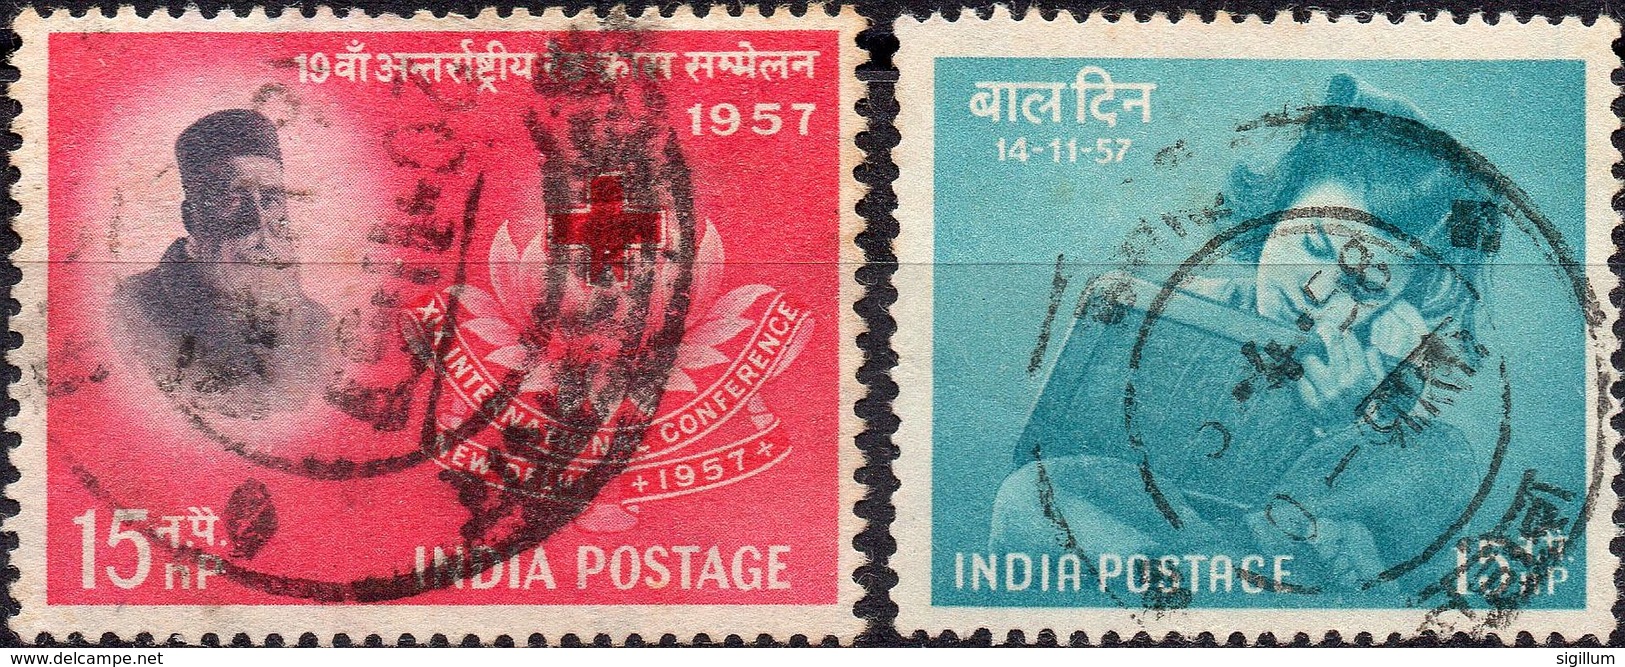 INDIA 1957 - CONFERENZA CROCE ROSSA + GIORNATA DEI BAMBINI - 2 VALORI USATI - Usati